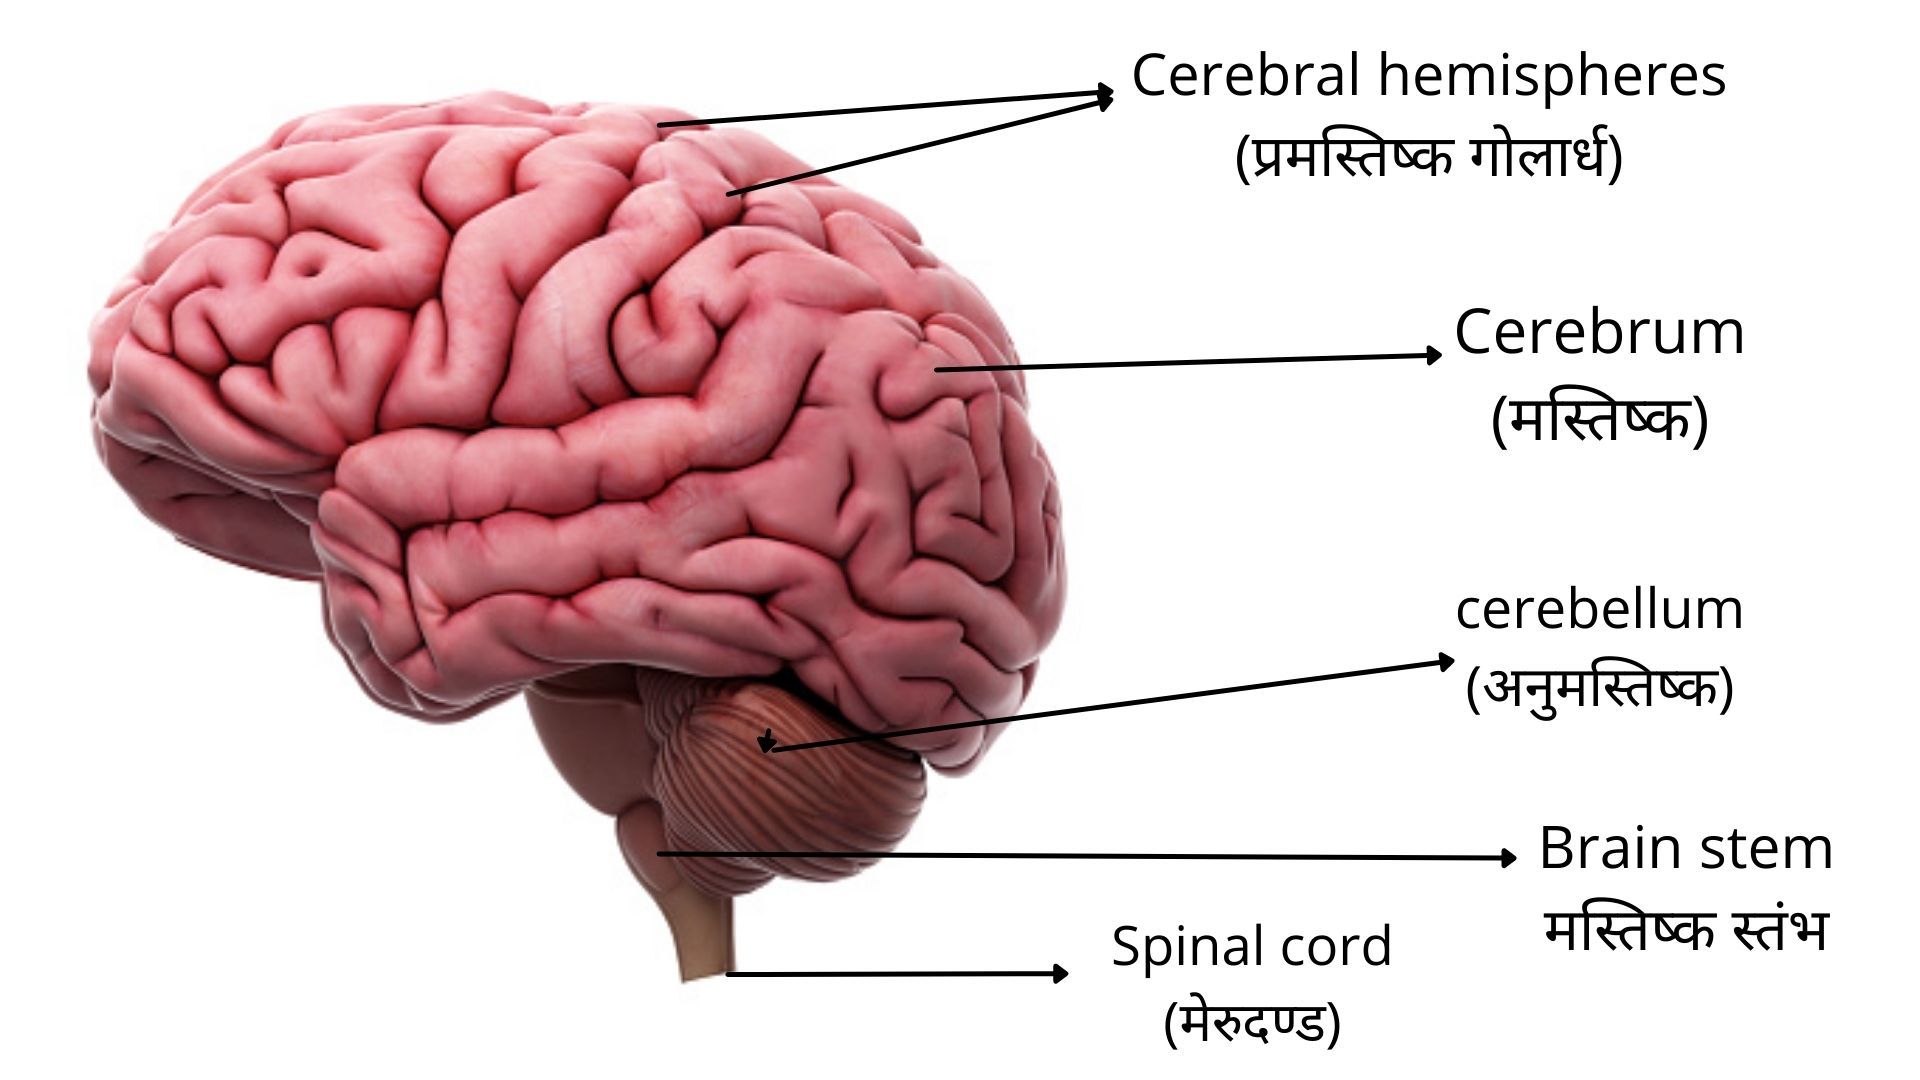 मस्तिष्क, मस्तिष्क की संरचना और चित्र